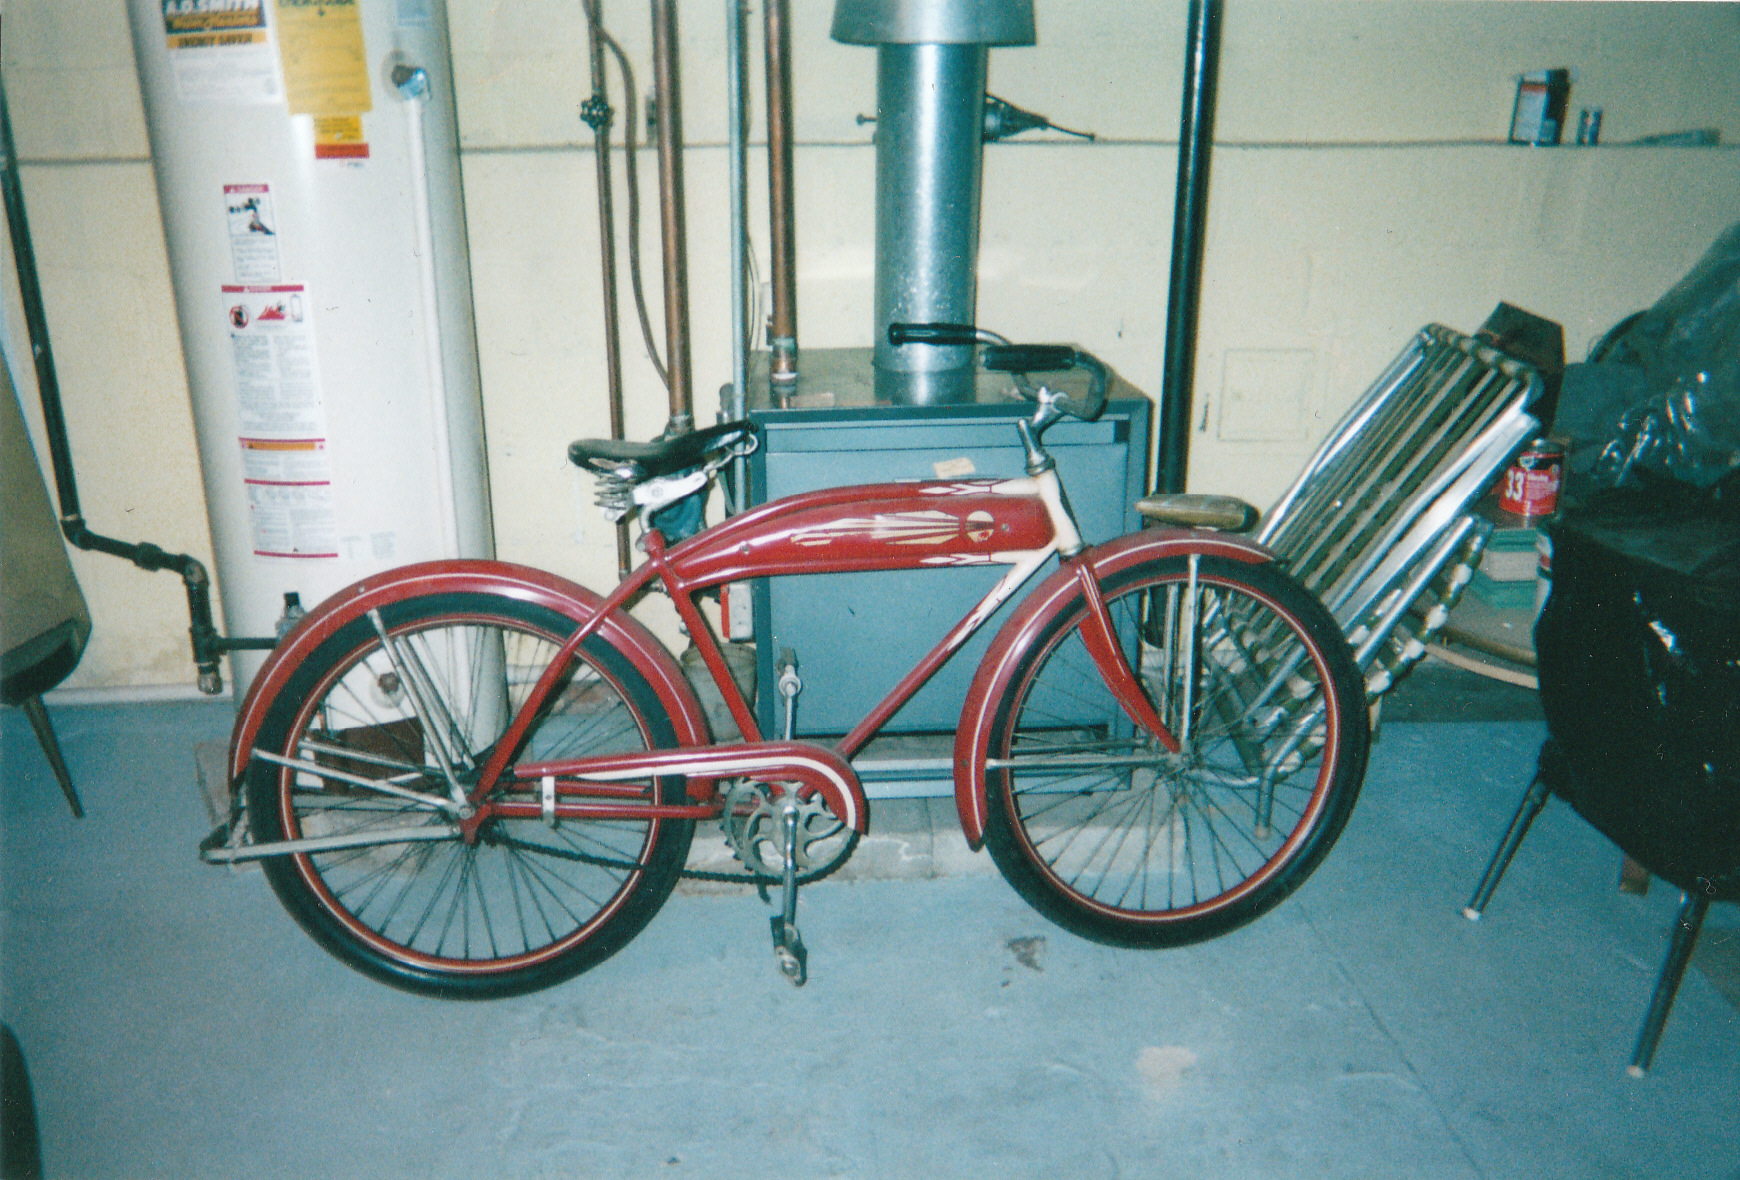 packard-bicycle-1940-jpg.4173